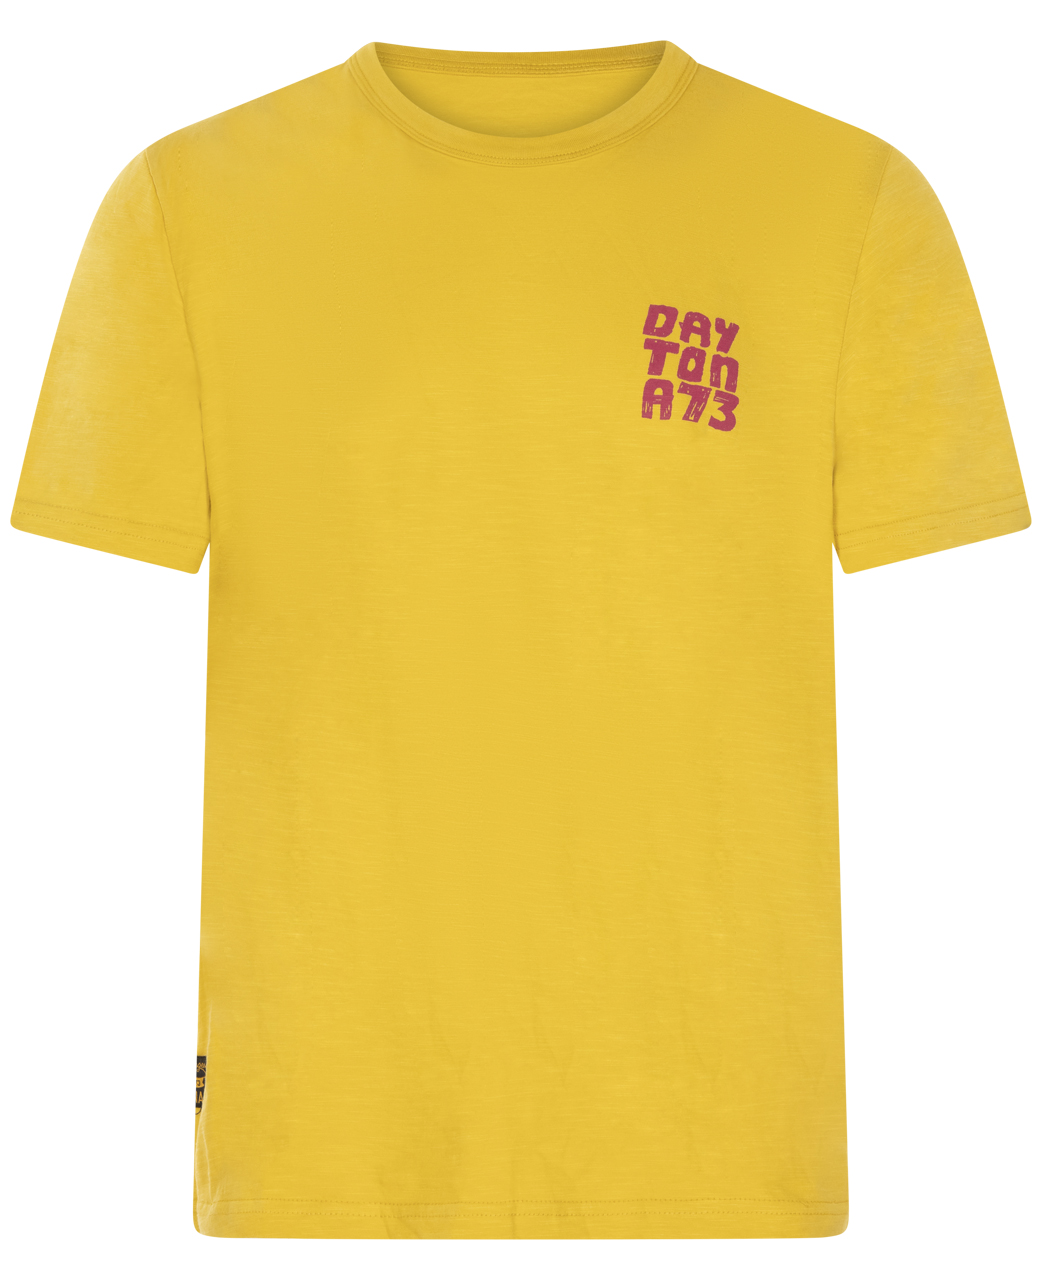 t-shirt manches courtes et col rond daytona en coton jaune